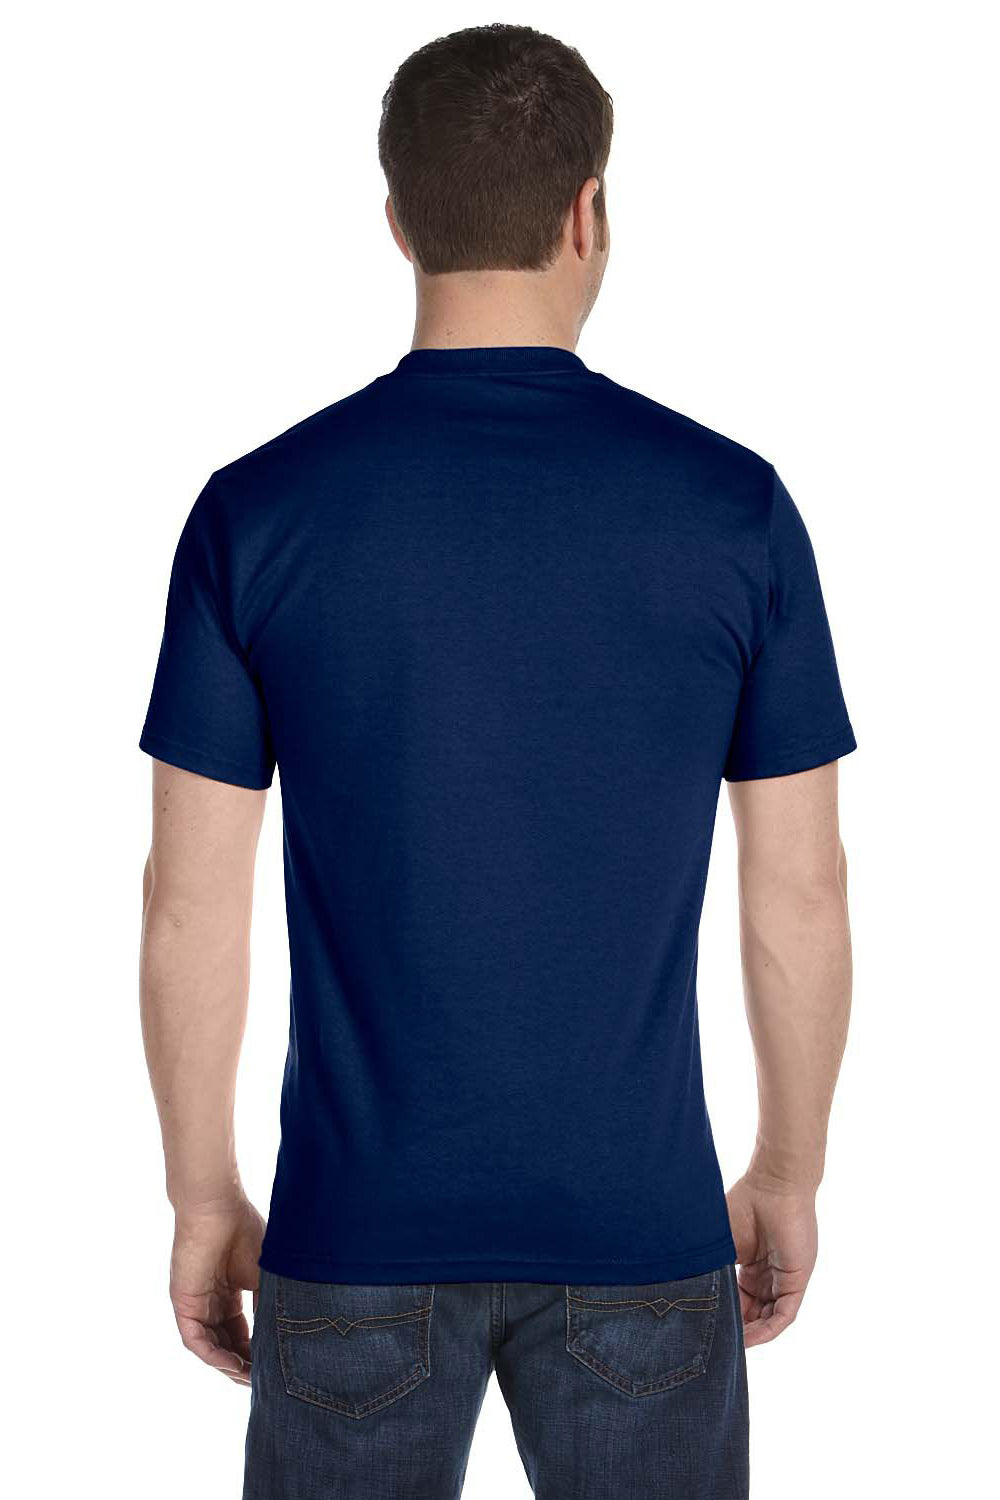 Gildan G800 Mens DryBlend Moisture Wicking Short Sleeve Crewneck T-Shirt Navy Blue Back